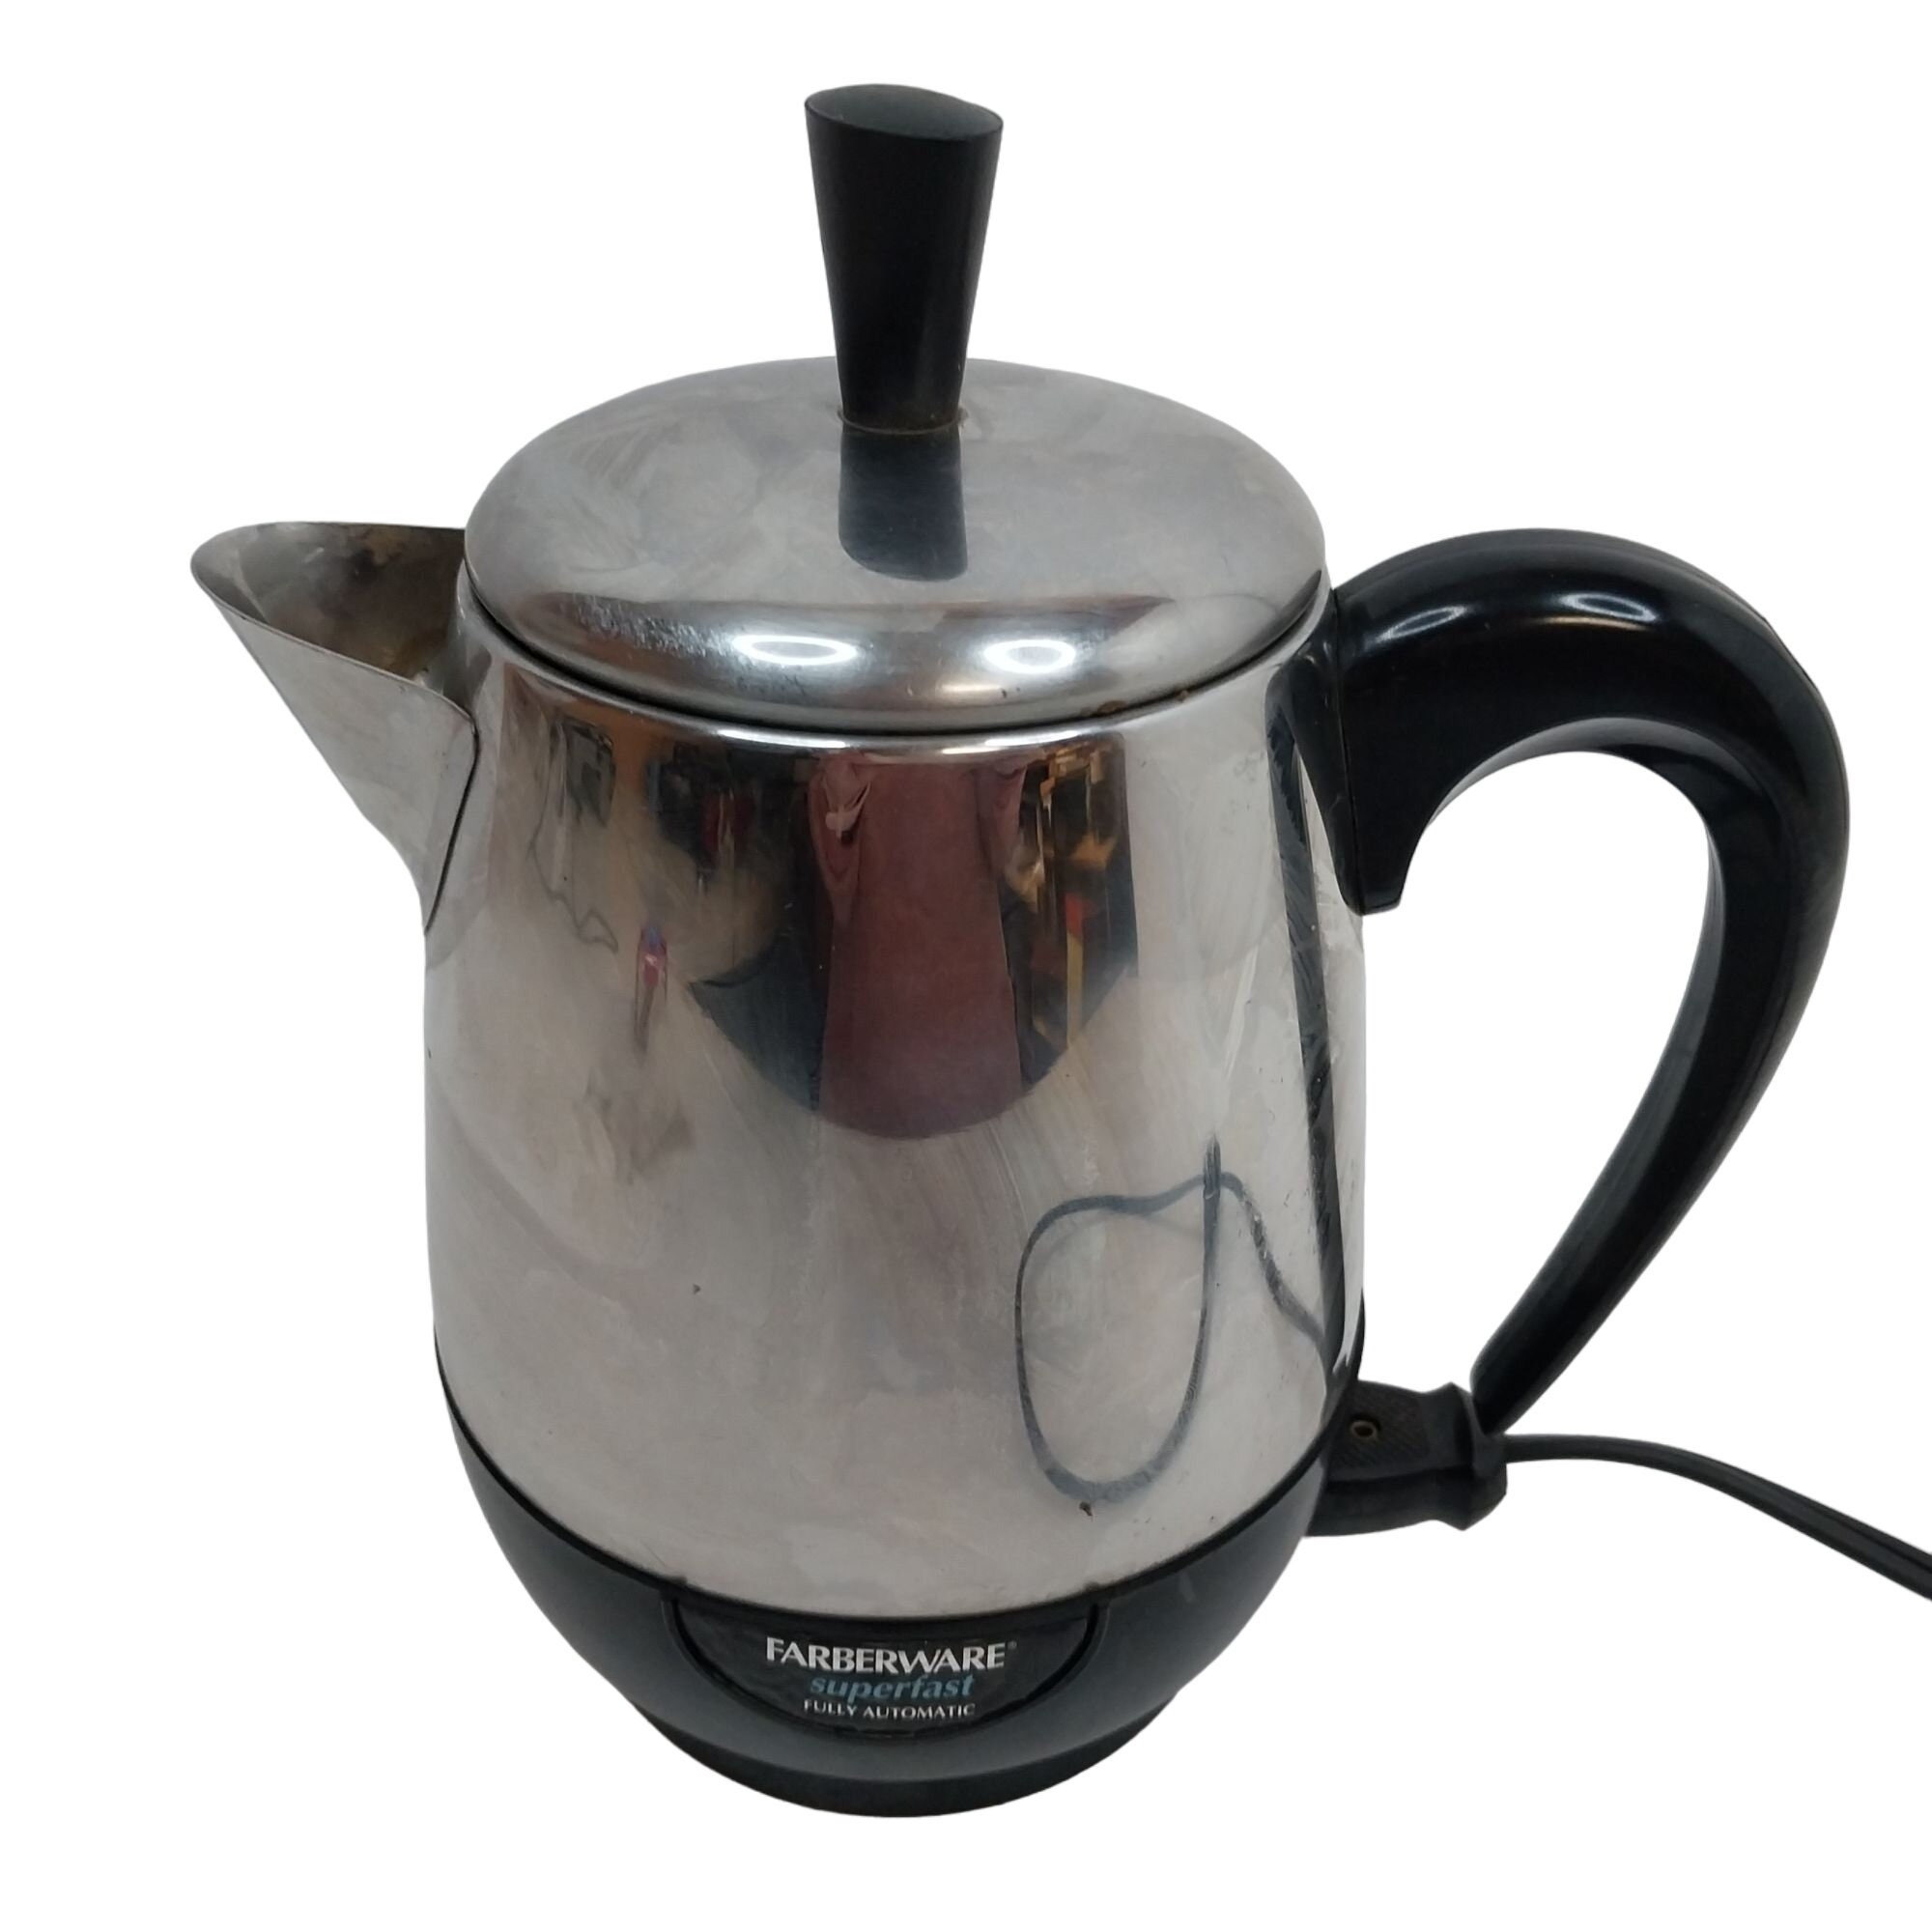 4 cup farberware coffee pot